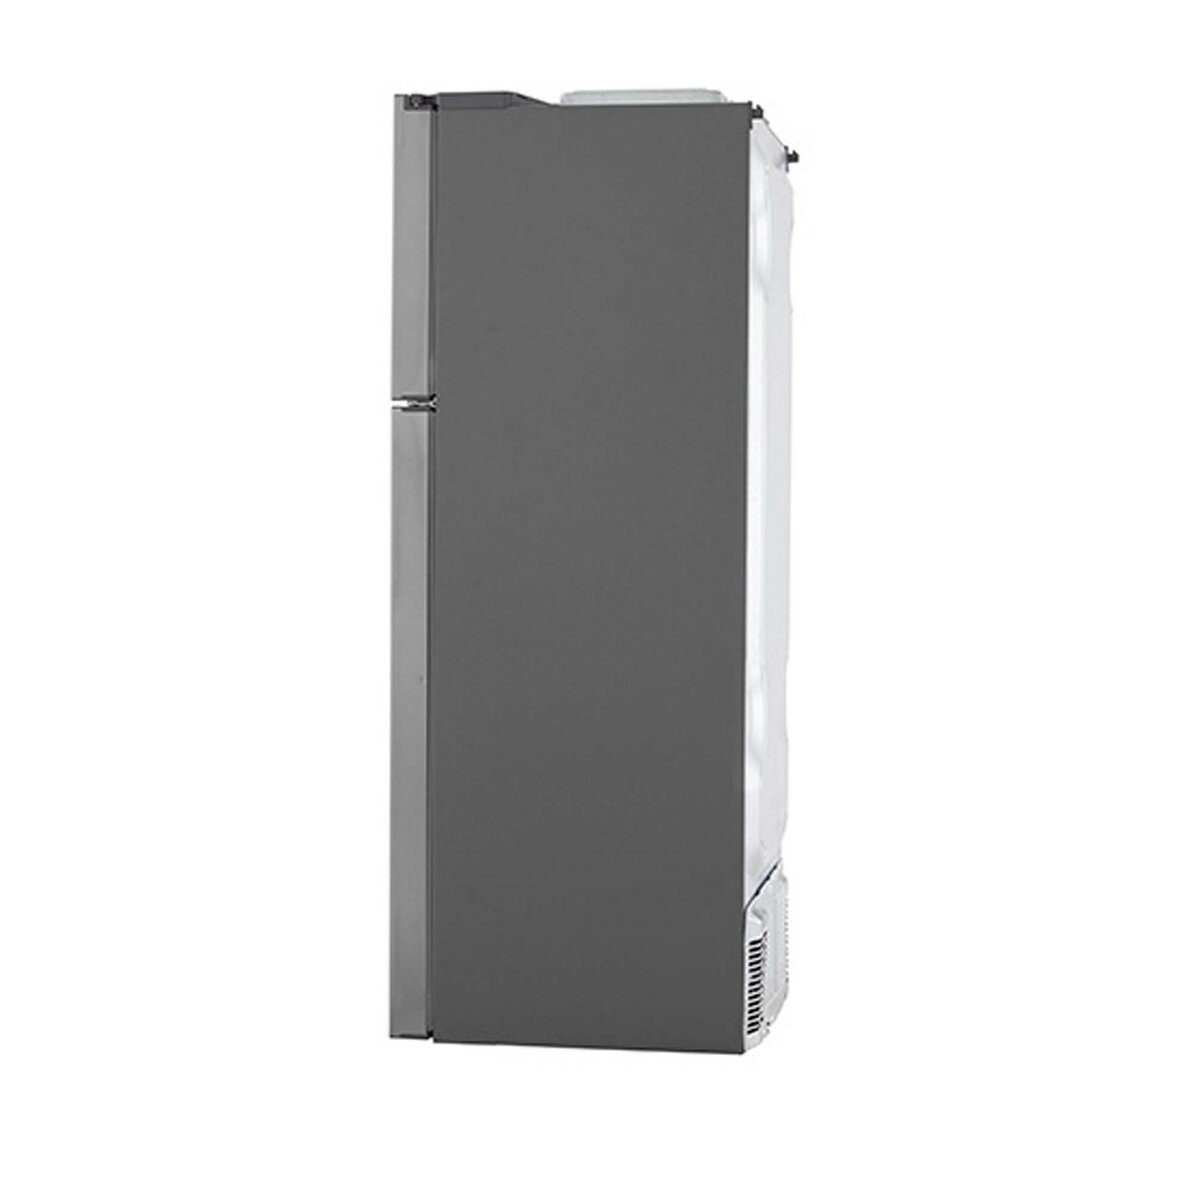 LG Double Door Refrigerator GR-F589HLHU 410LTR, LINEAR Cooling, Door Cooling, Hygiene FRESH + ™